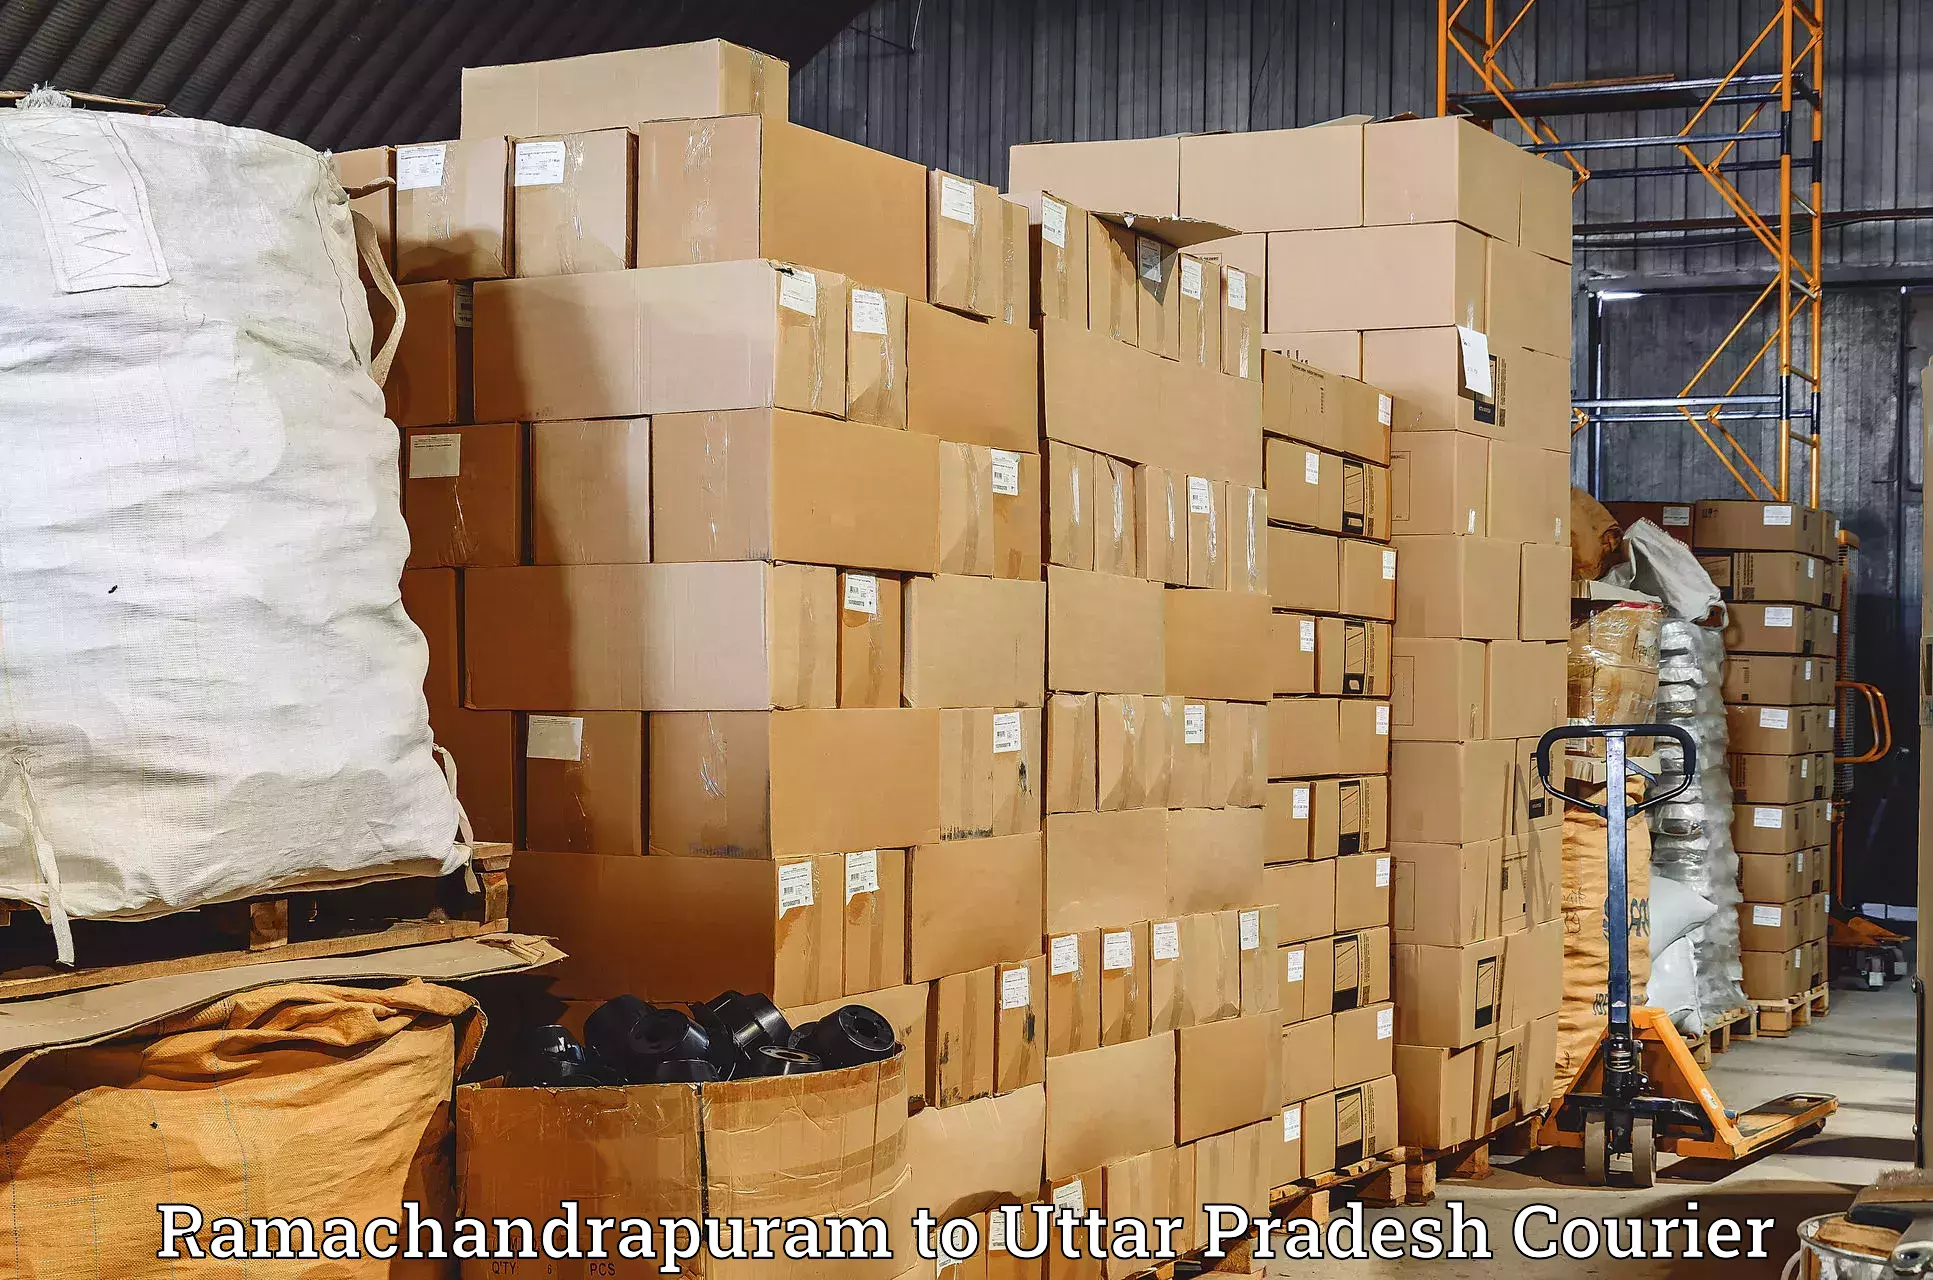 High-capacity parcel service Ramachandrapuram to Uttar Pradesh